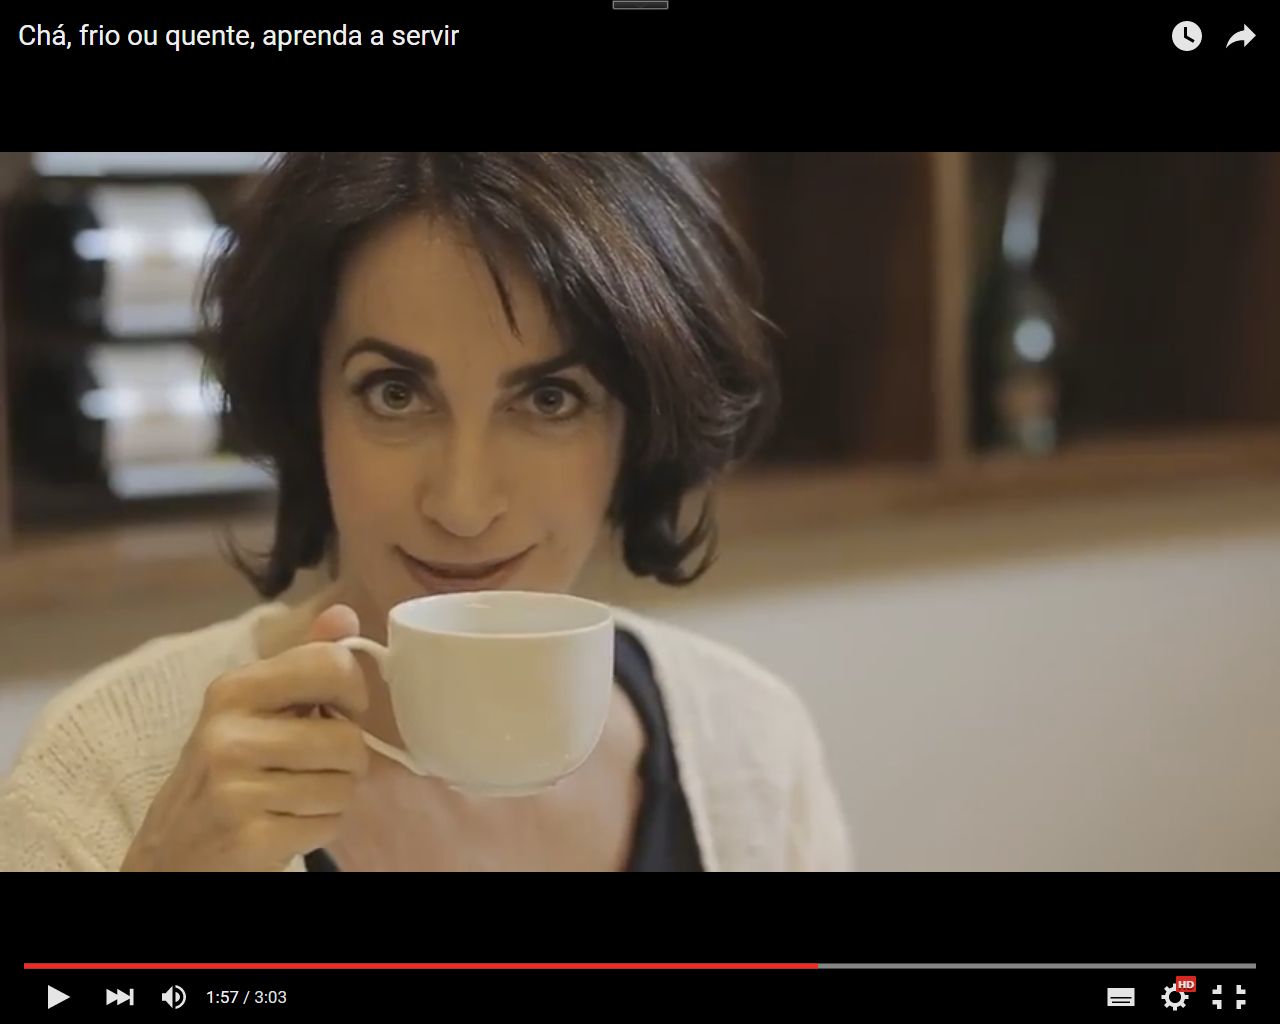 Imagem da jornalista Claudia Matarazzo, apenas do rosto, ela segura na mão direita um xícara de chá, e tem uma expressão de uma boa surpresa.